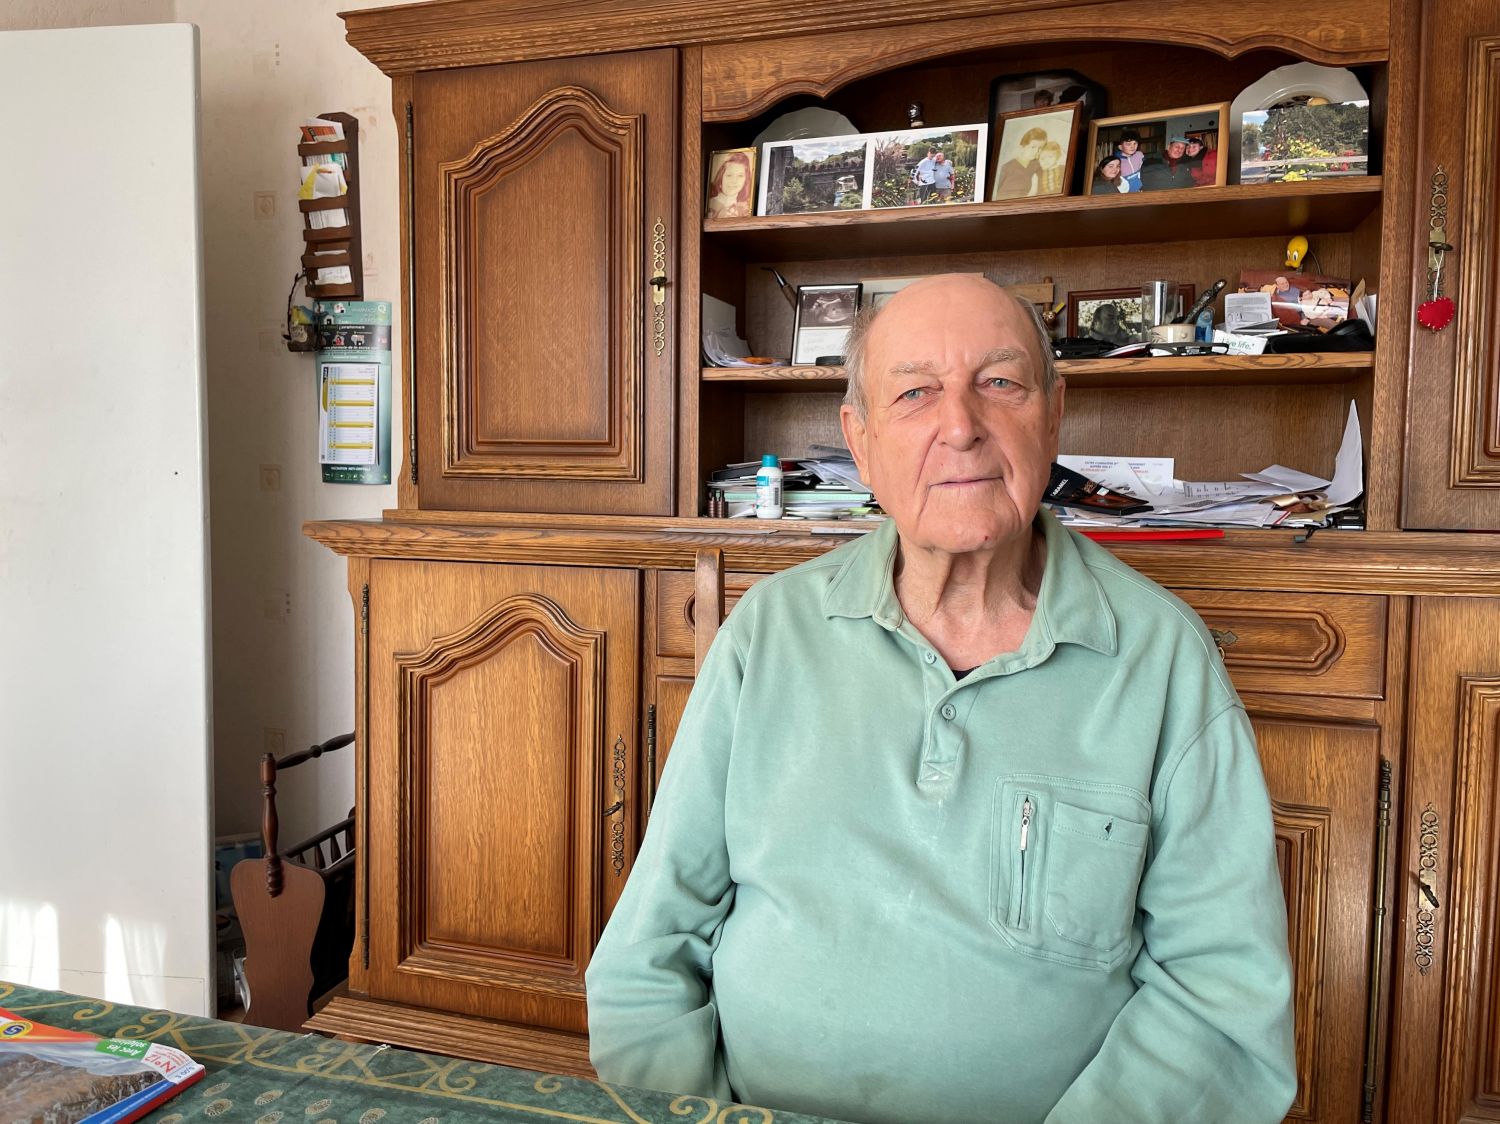 A Saint-Avold, Albert Weber à 78 ans et marche plus de 10km chaque jour